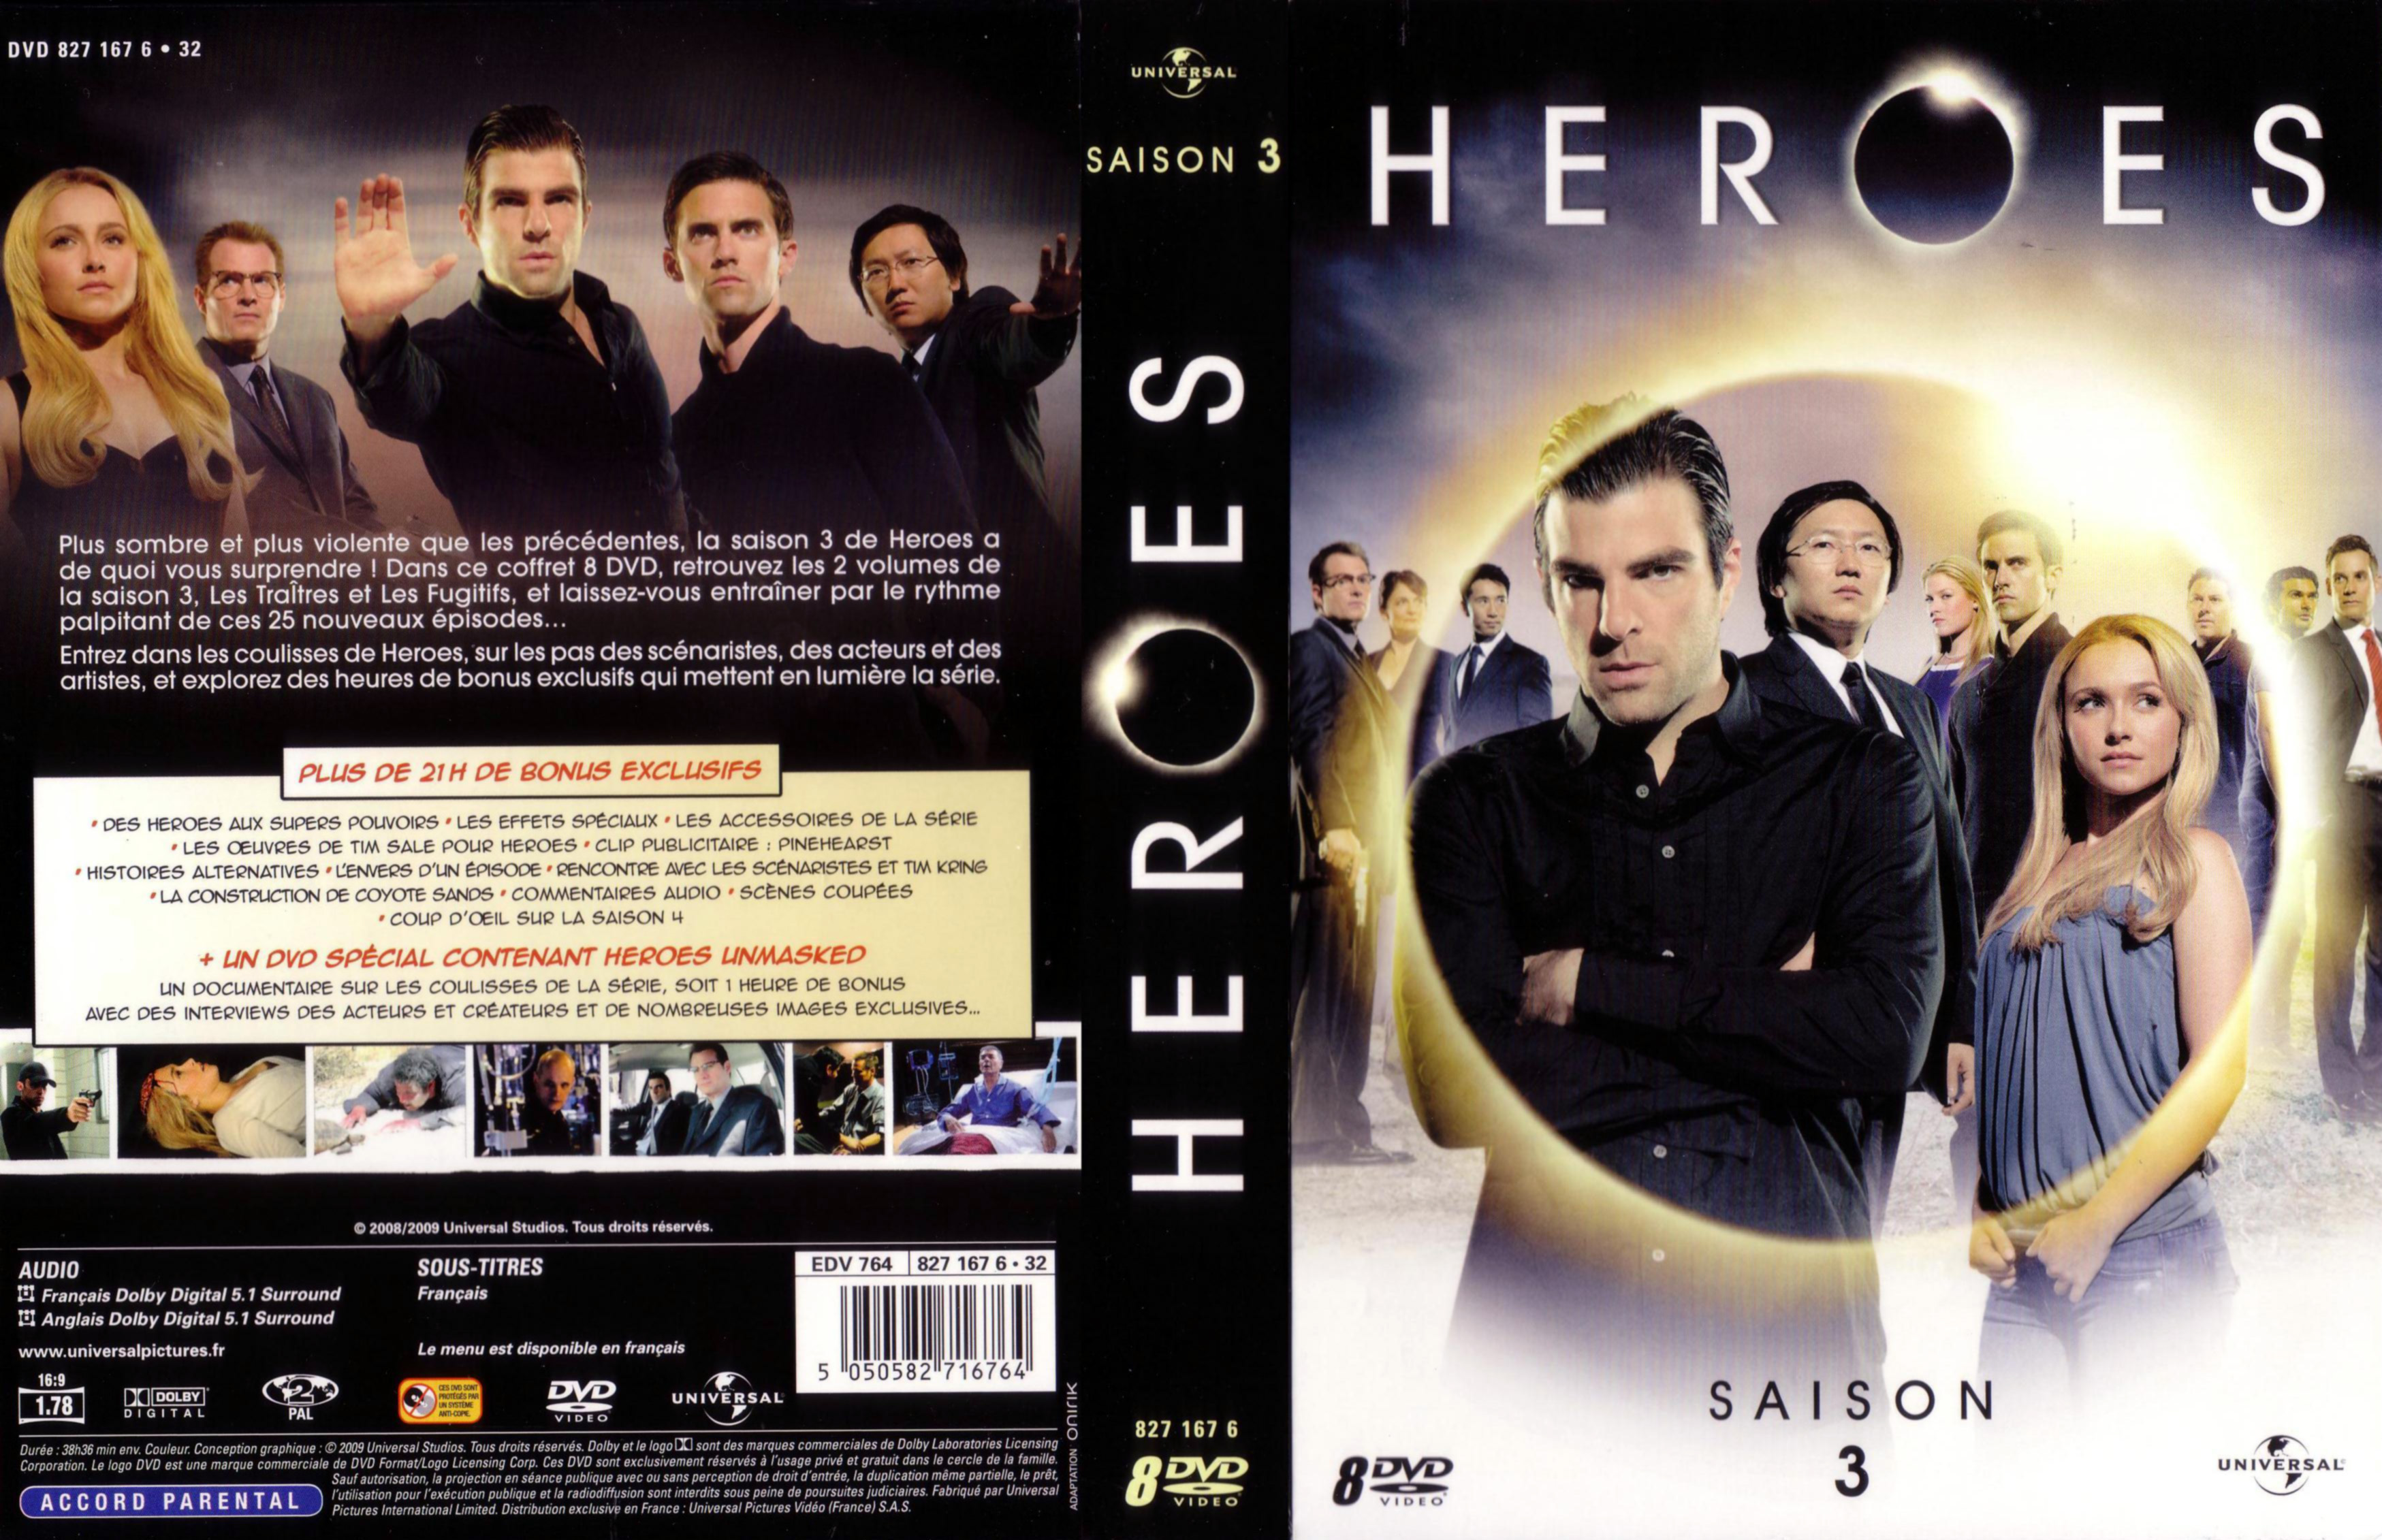 Jaquette DVD Heroes saison 3 COFFRET